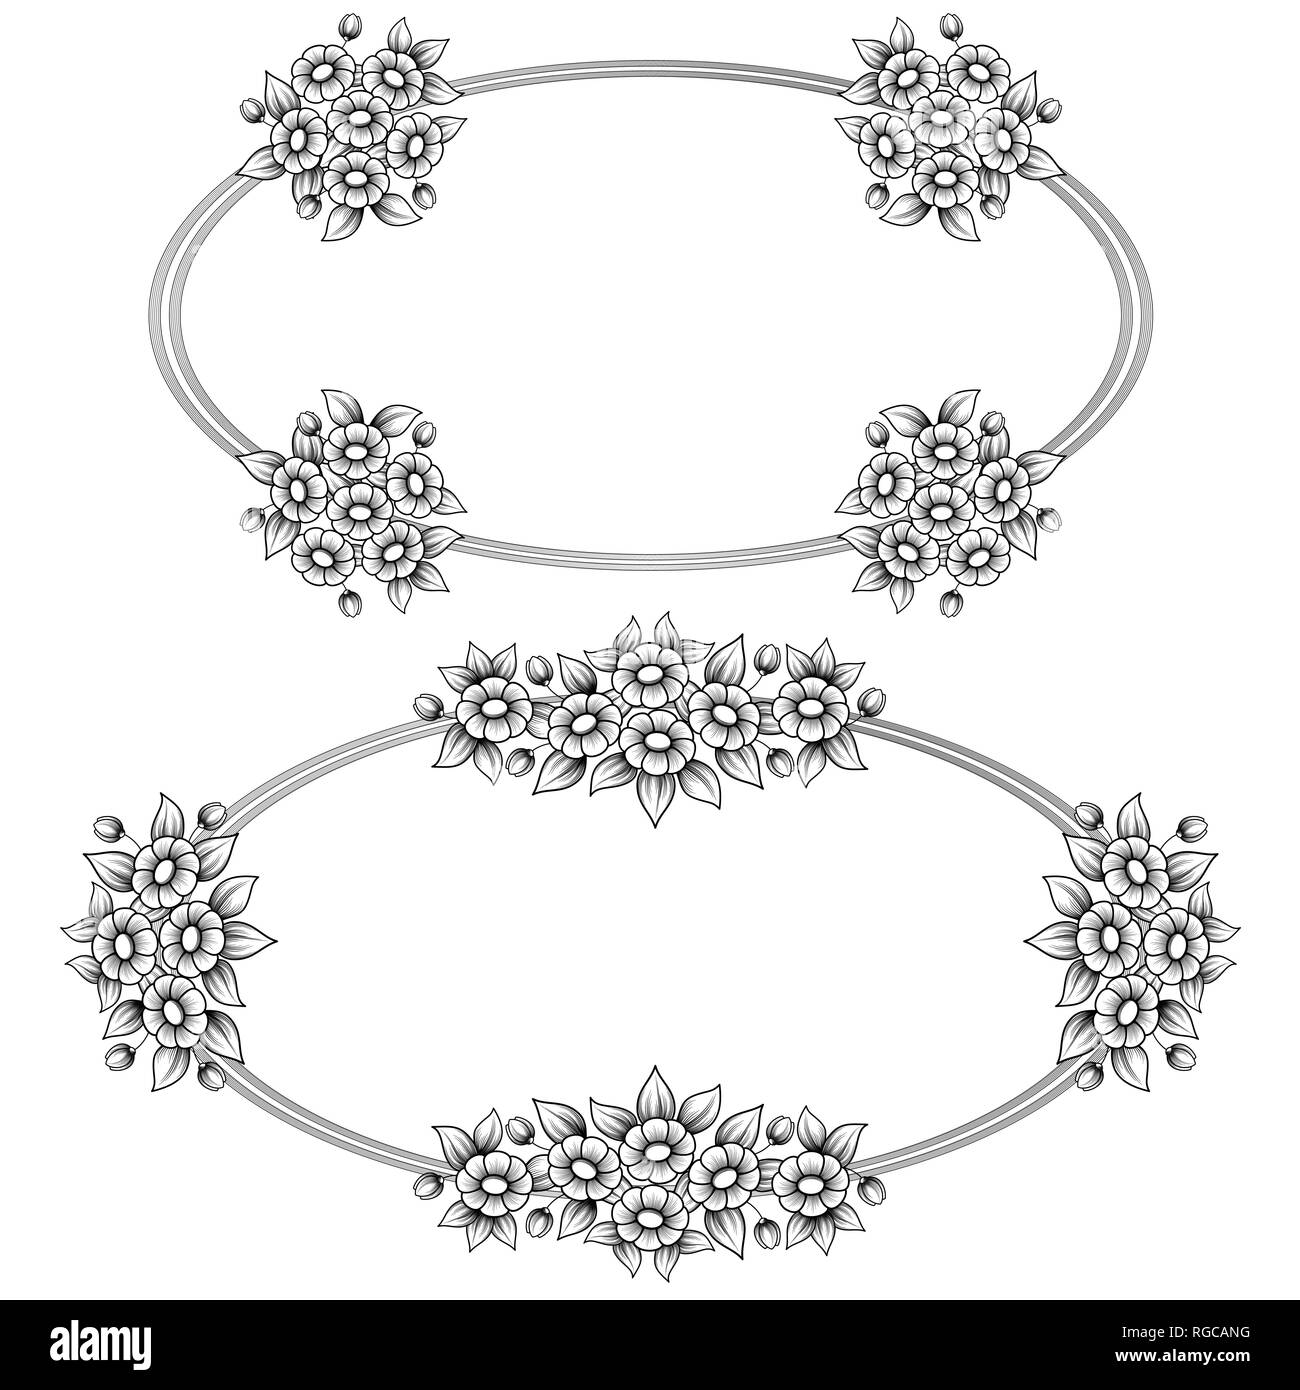 Zwei schwarz-weiße, ovale, Frames mit floralen Elementen Stock Vektor